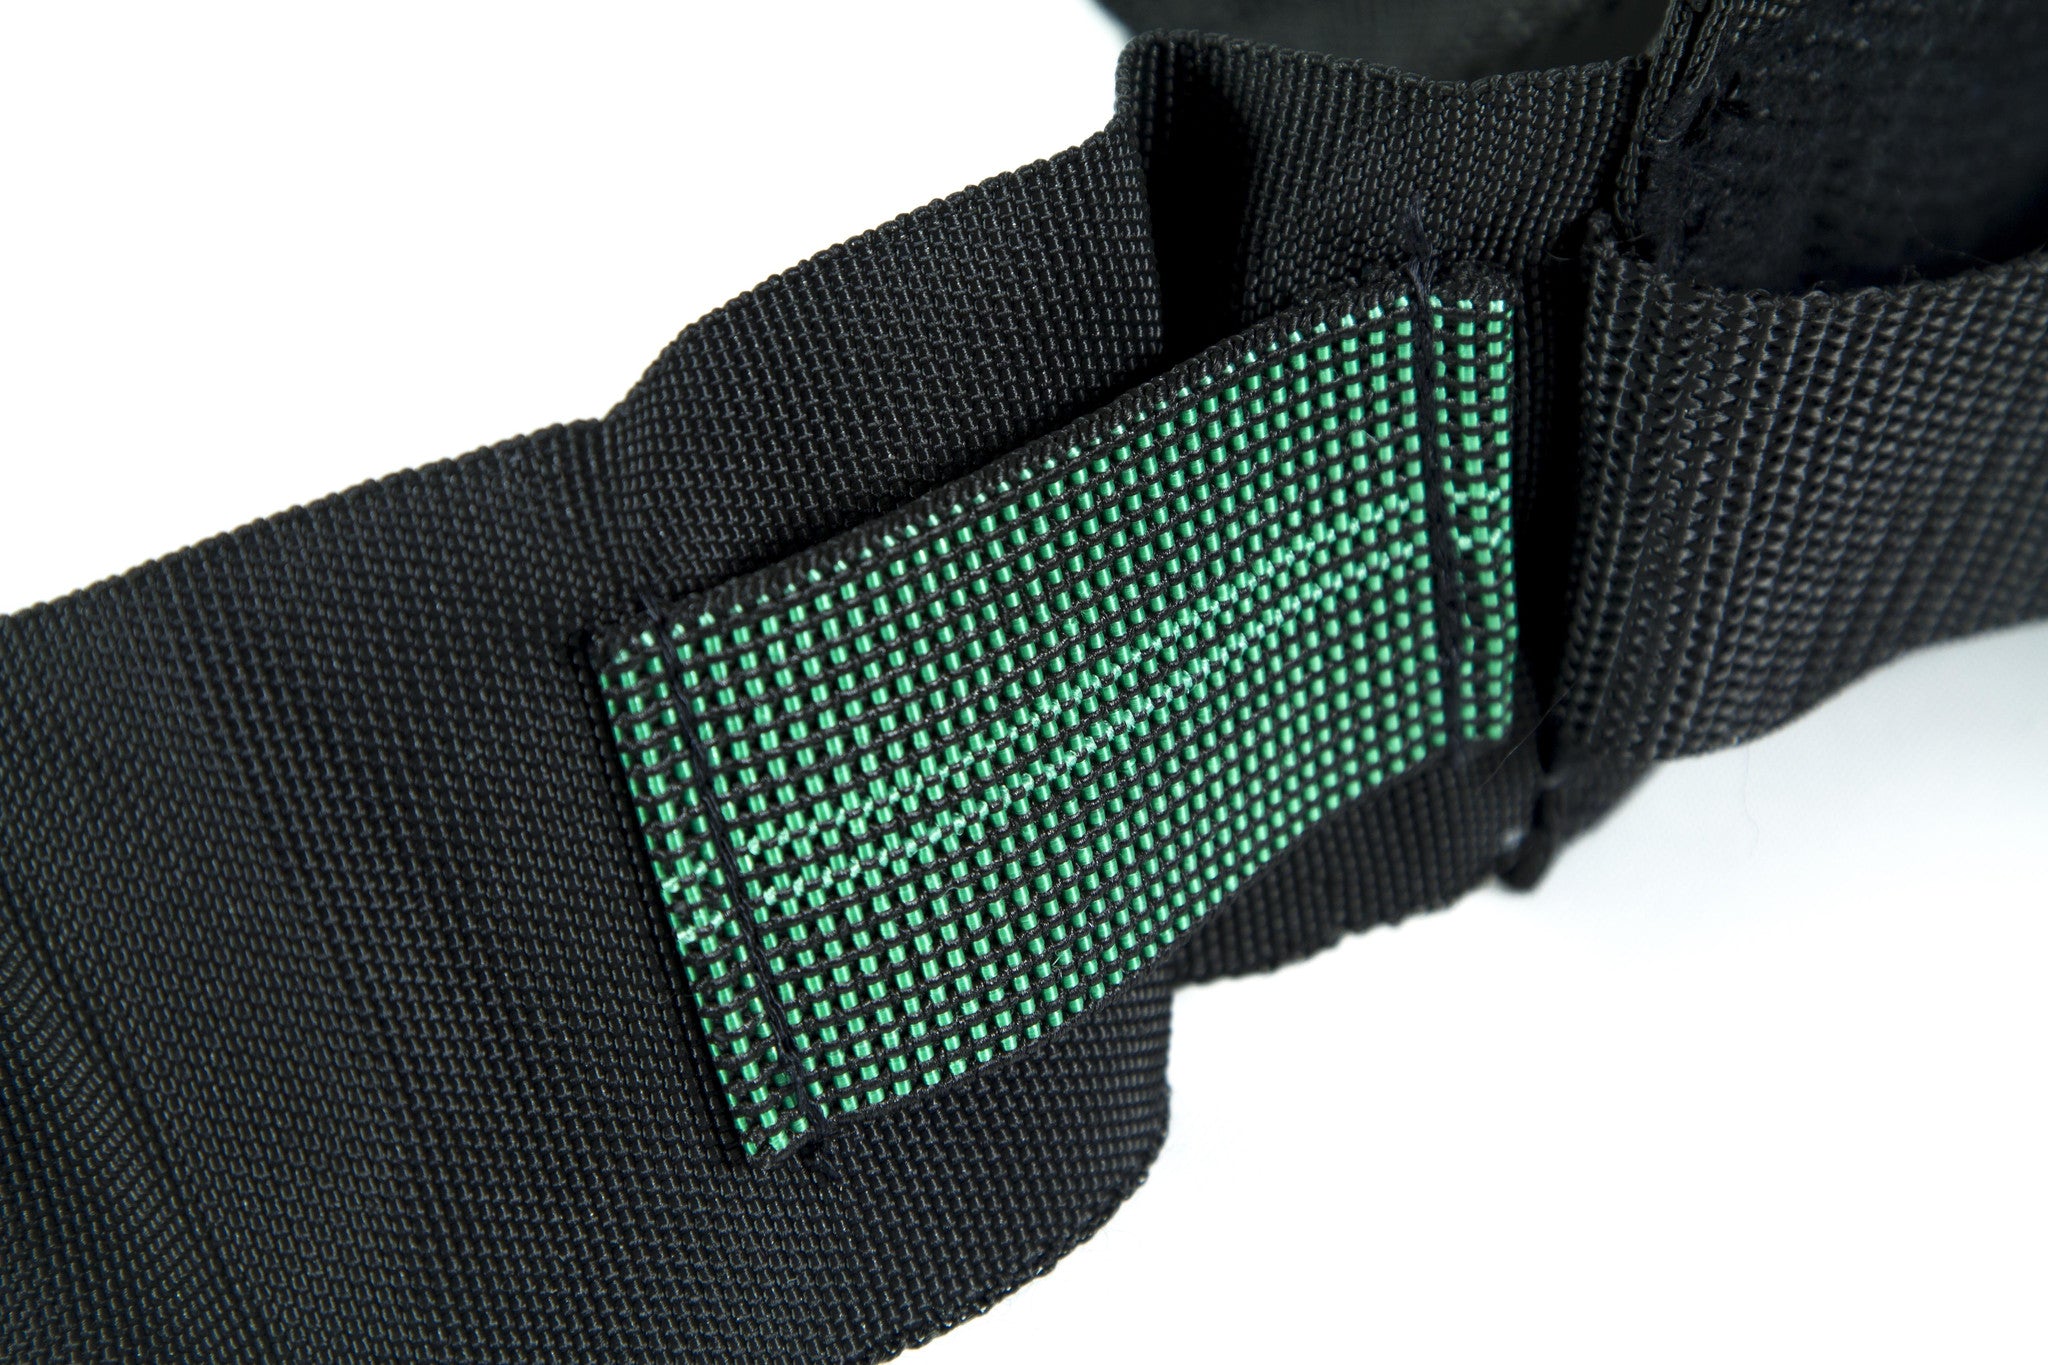 Hands Free Trekking Belt with pocket - Resistant Materials